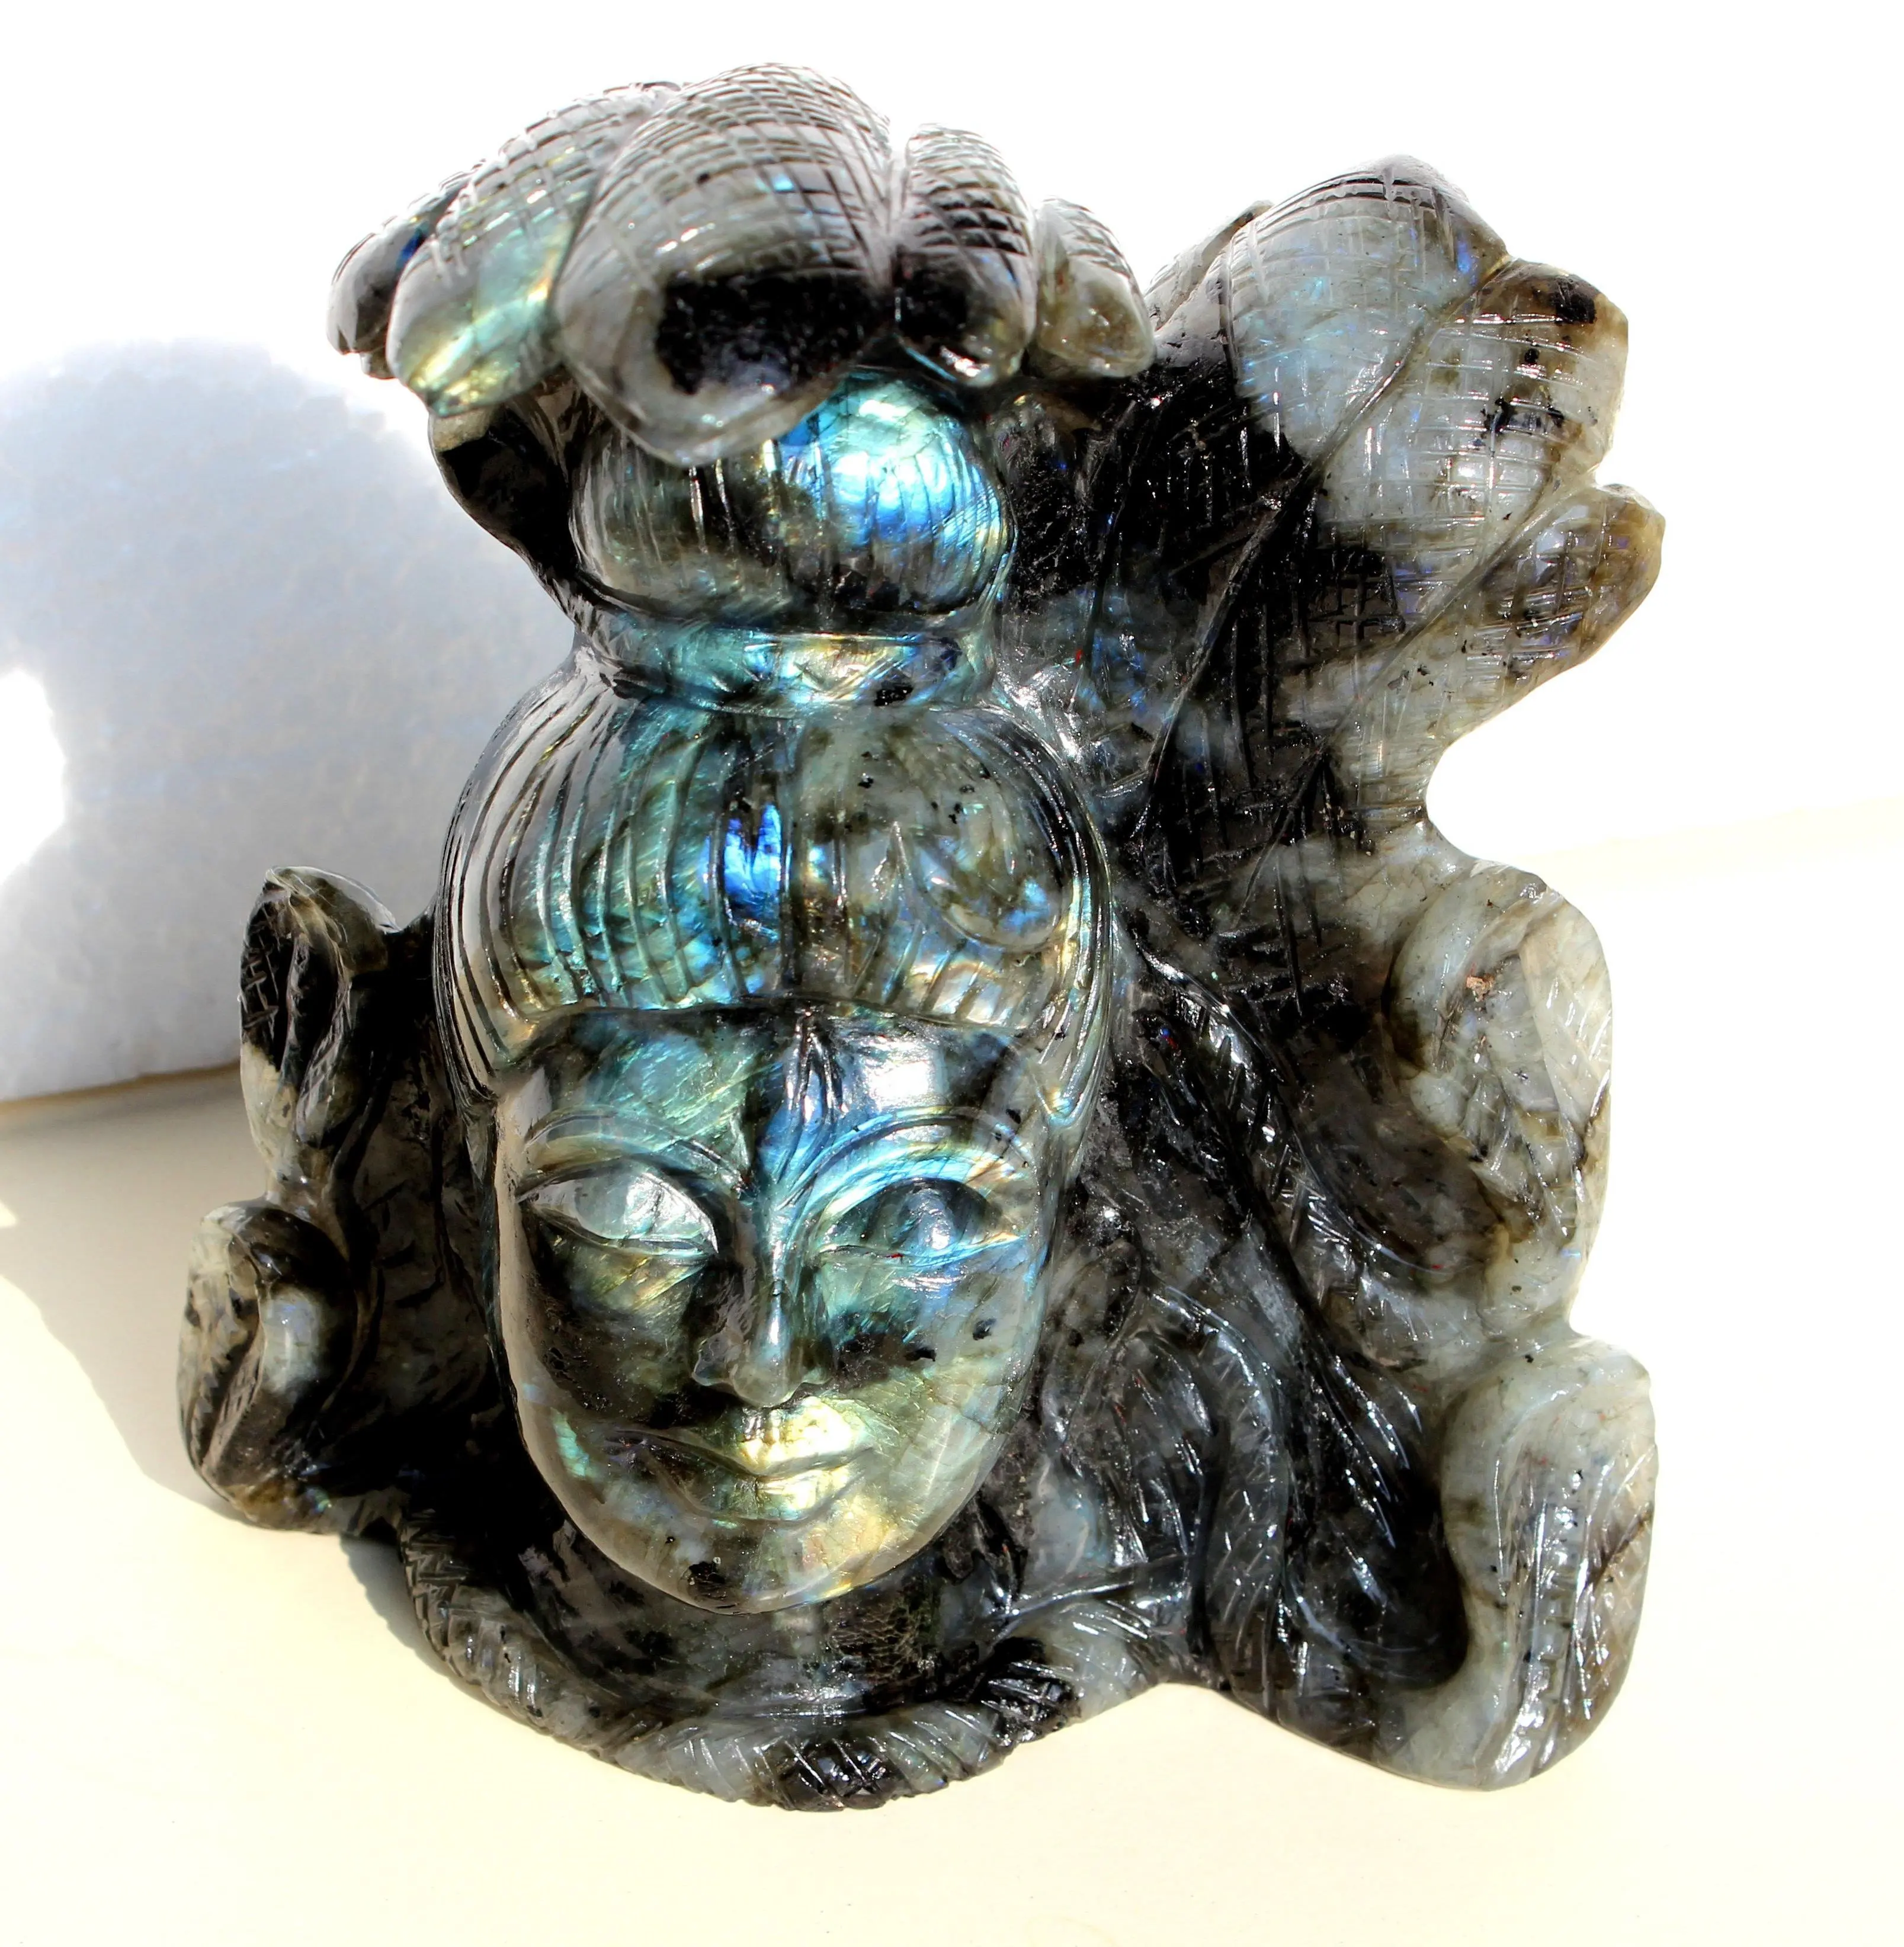 Labradorit oyma heykel el oyma Shiva heykeli heykelcik Shiva heykeli doğal taş şifa kristal